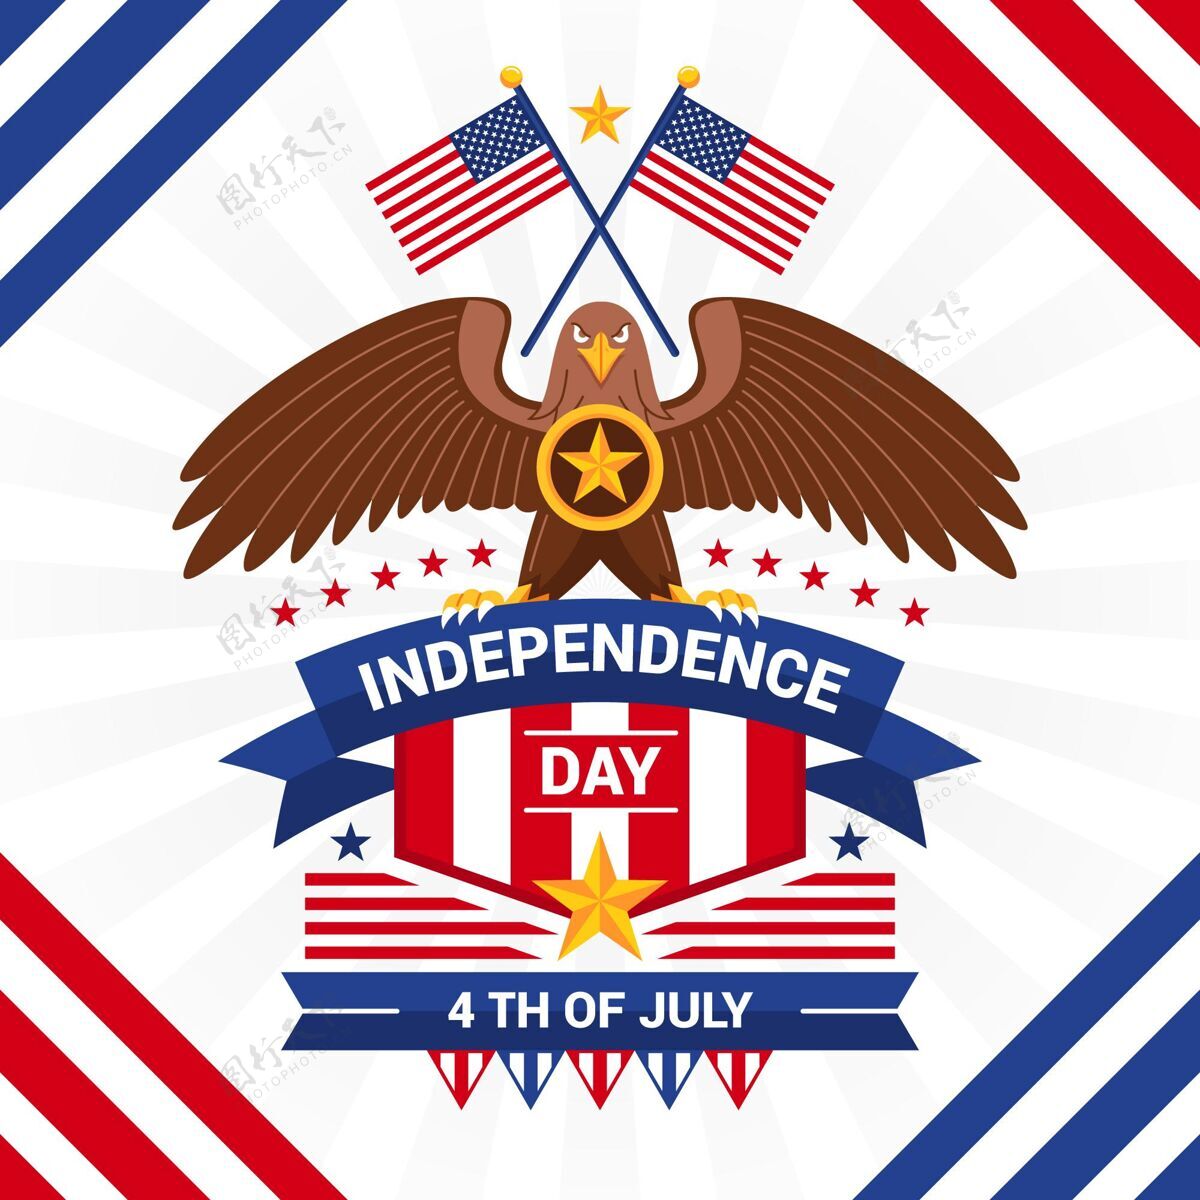 平面设计七月四日-独立日插画手绘美国美国